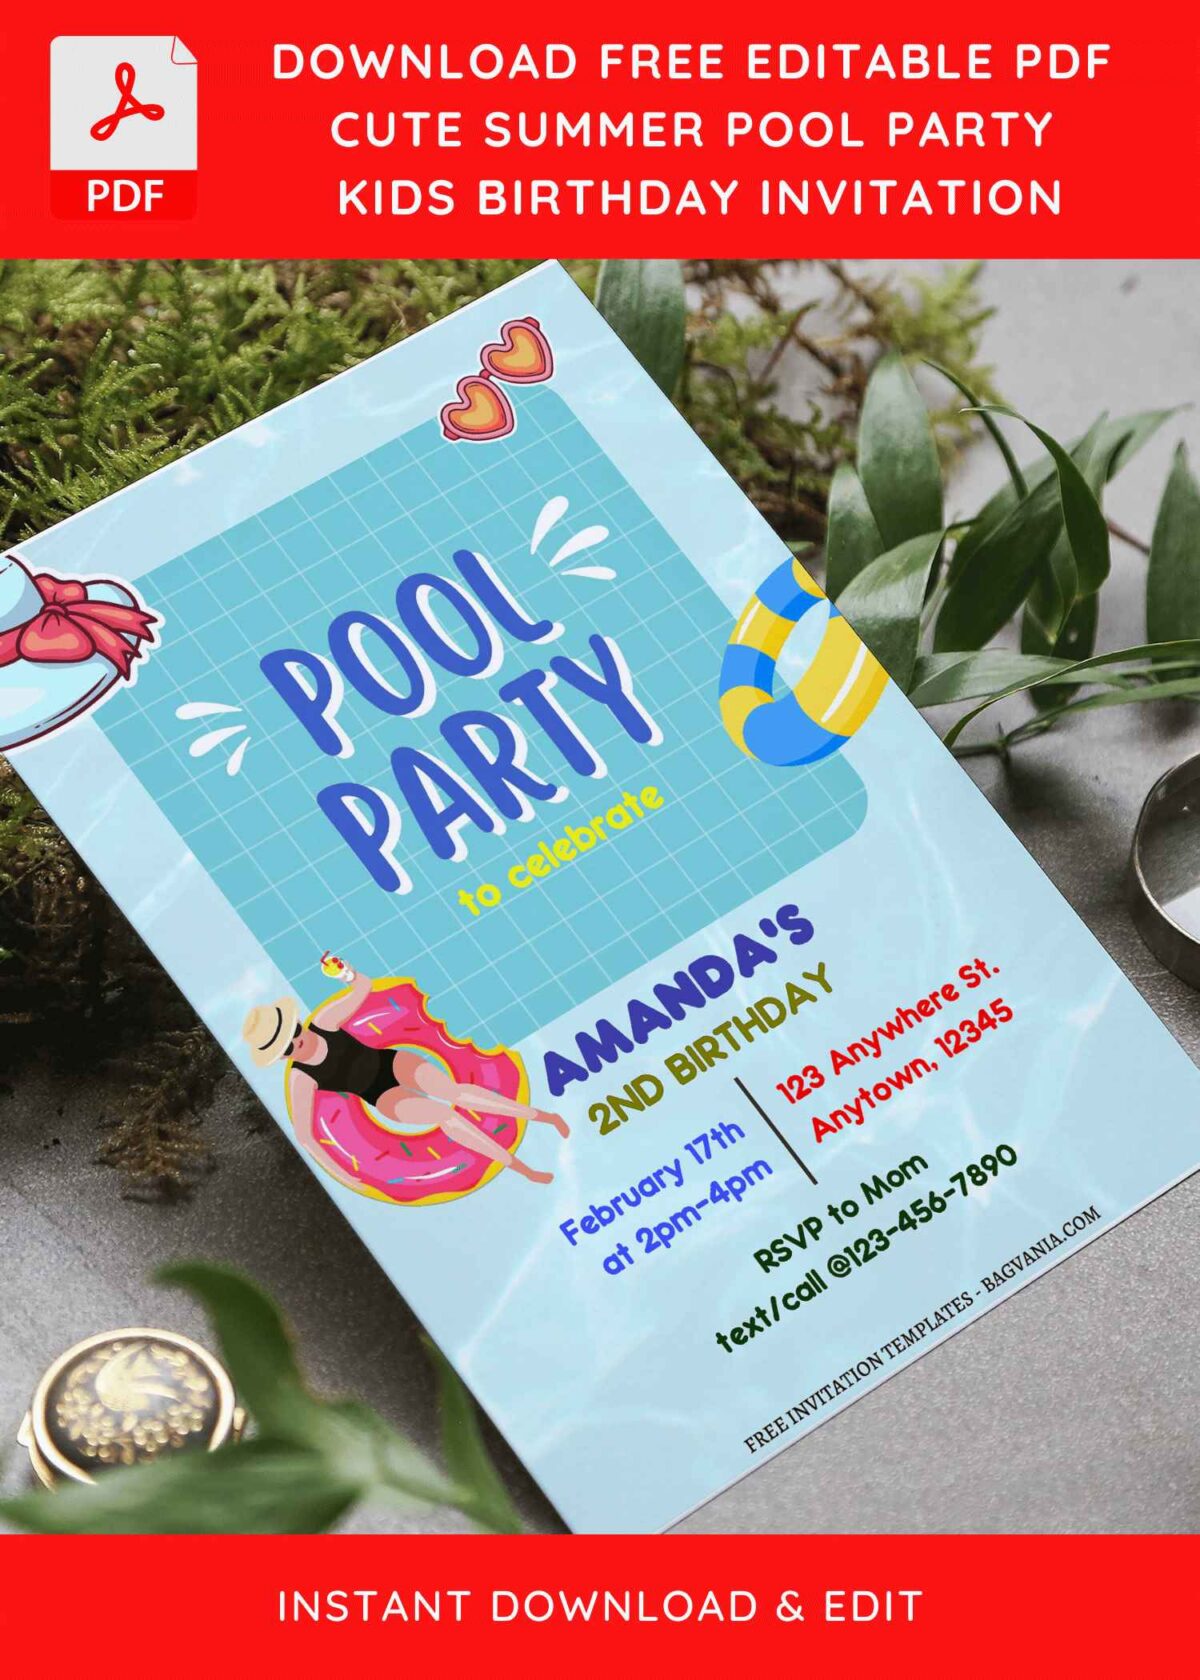 (Free Editable PDF) Adorable Cartoon Pool Kids Birthday Invitation Templates F